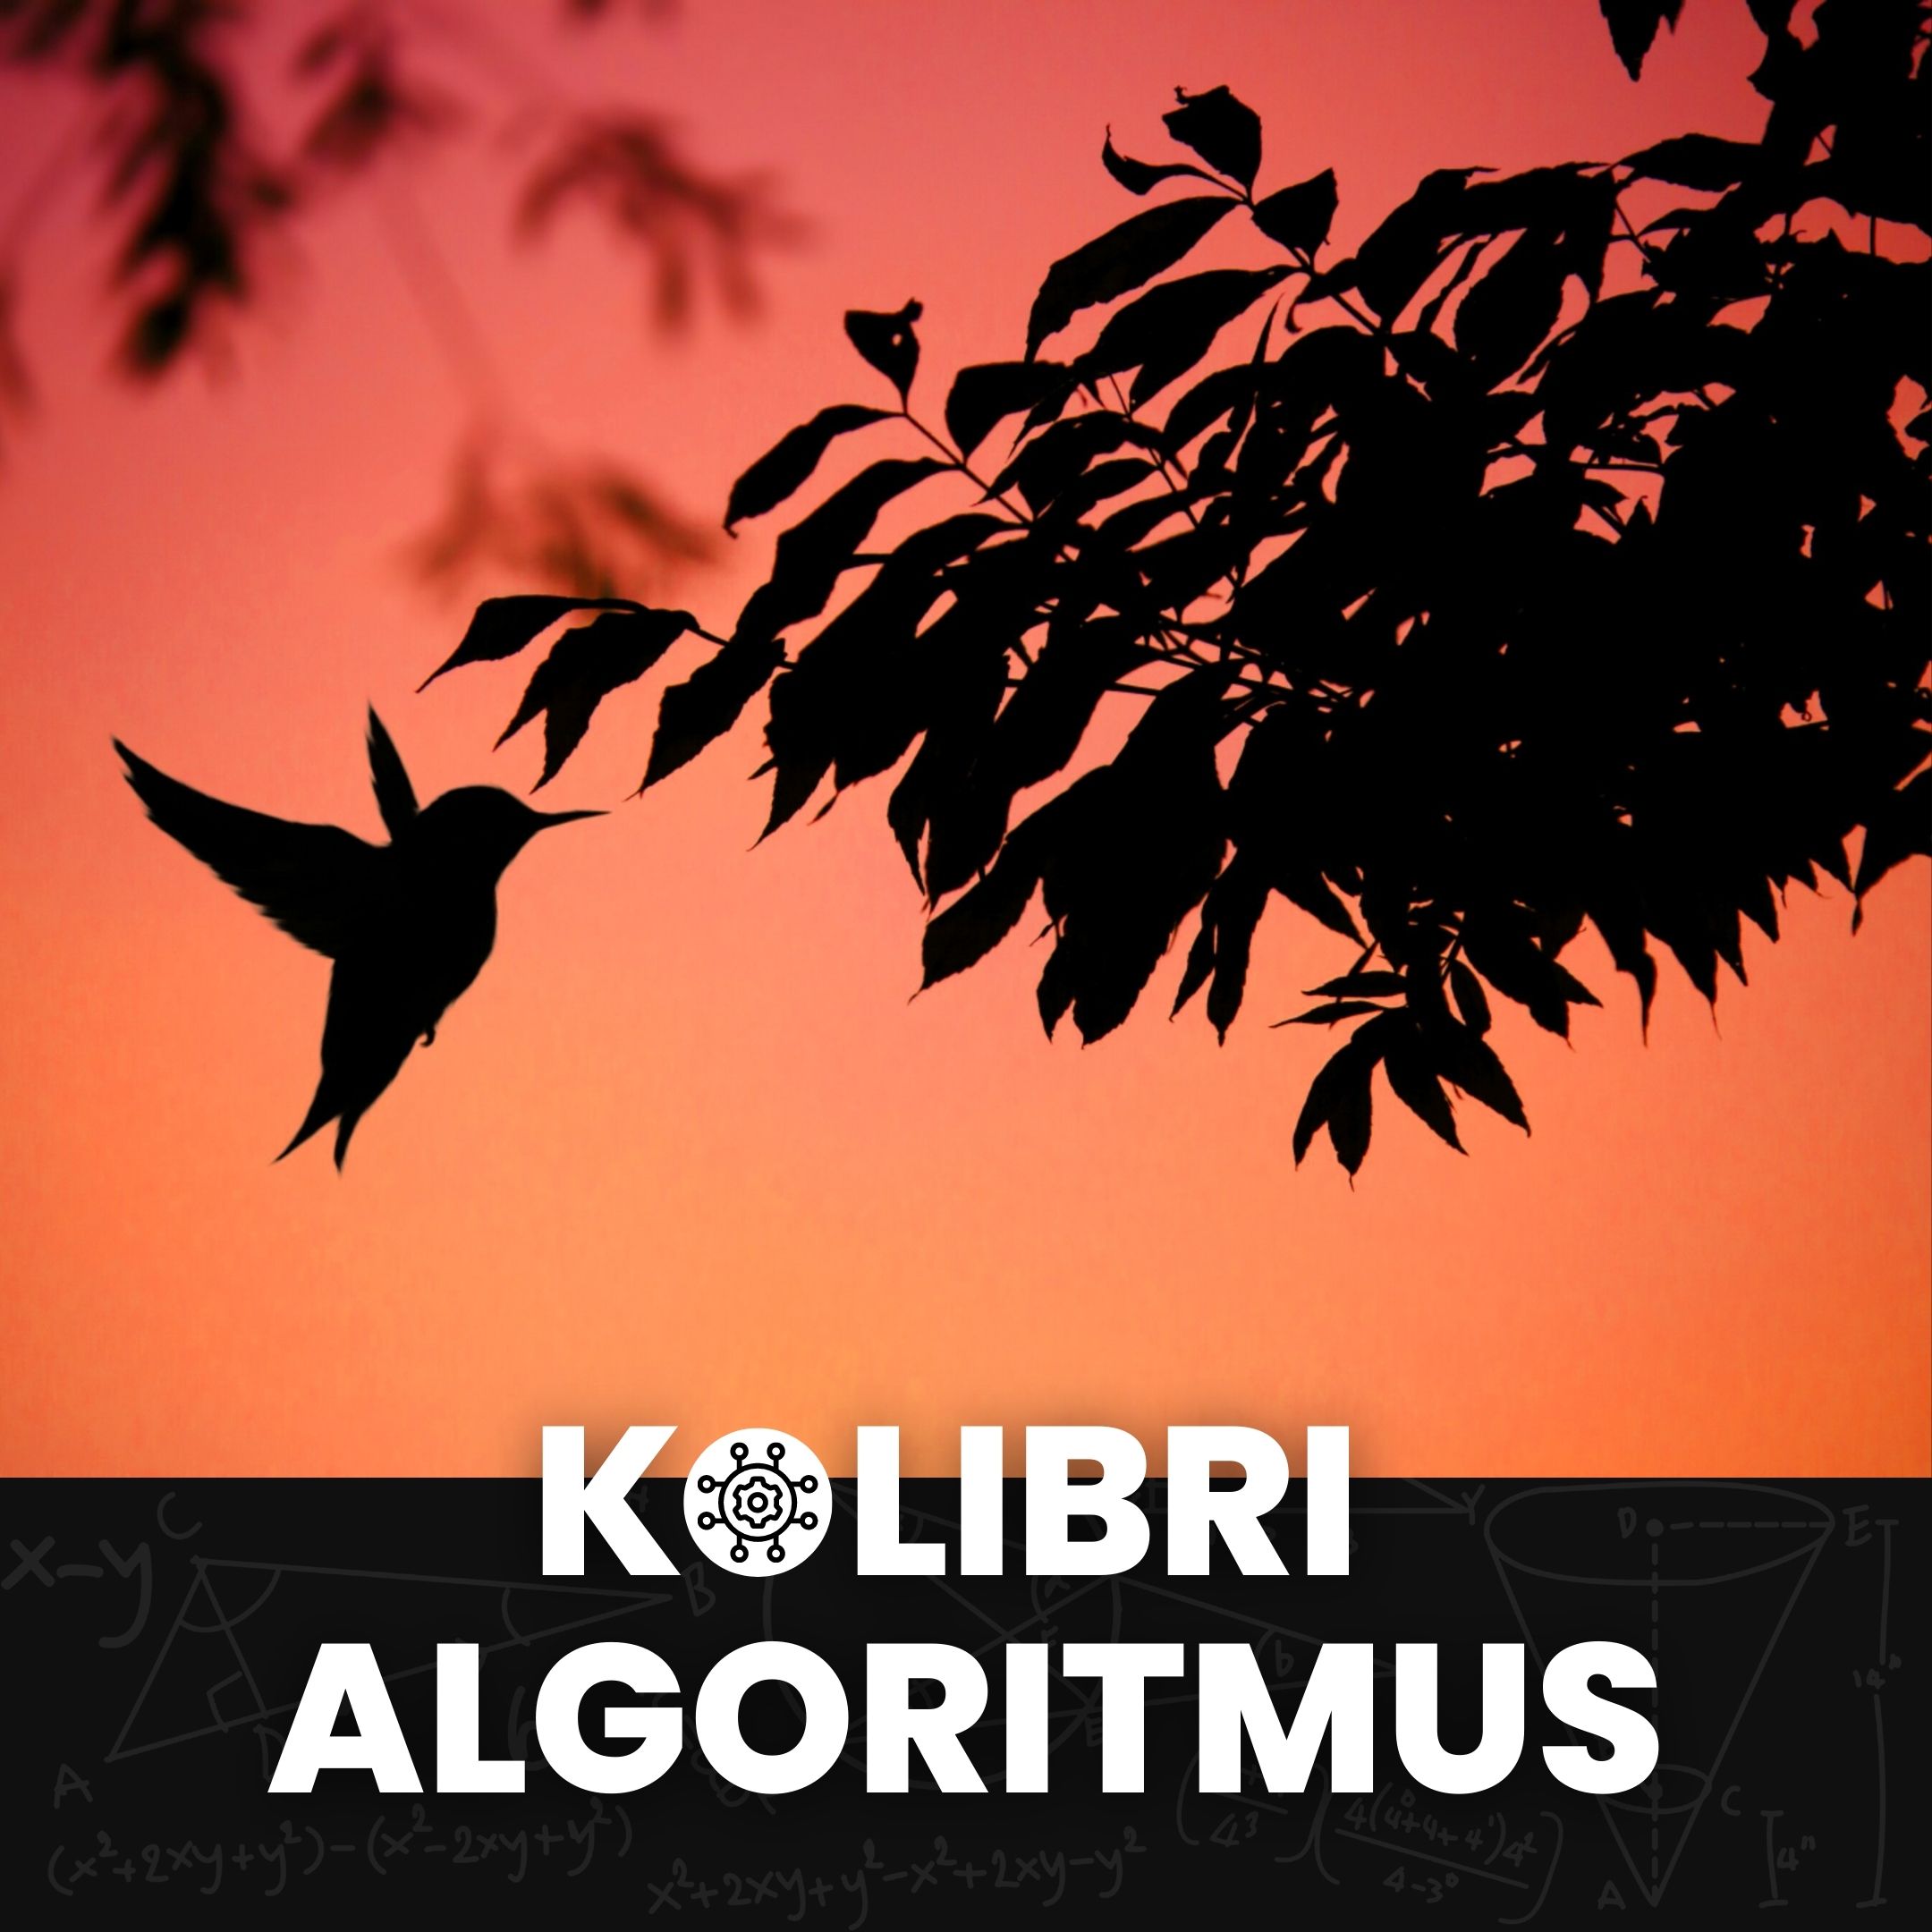 Google algoritmus: Kolibri